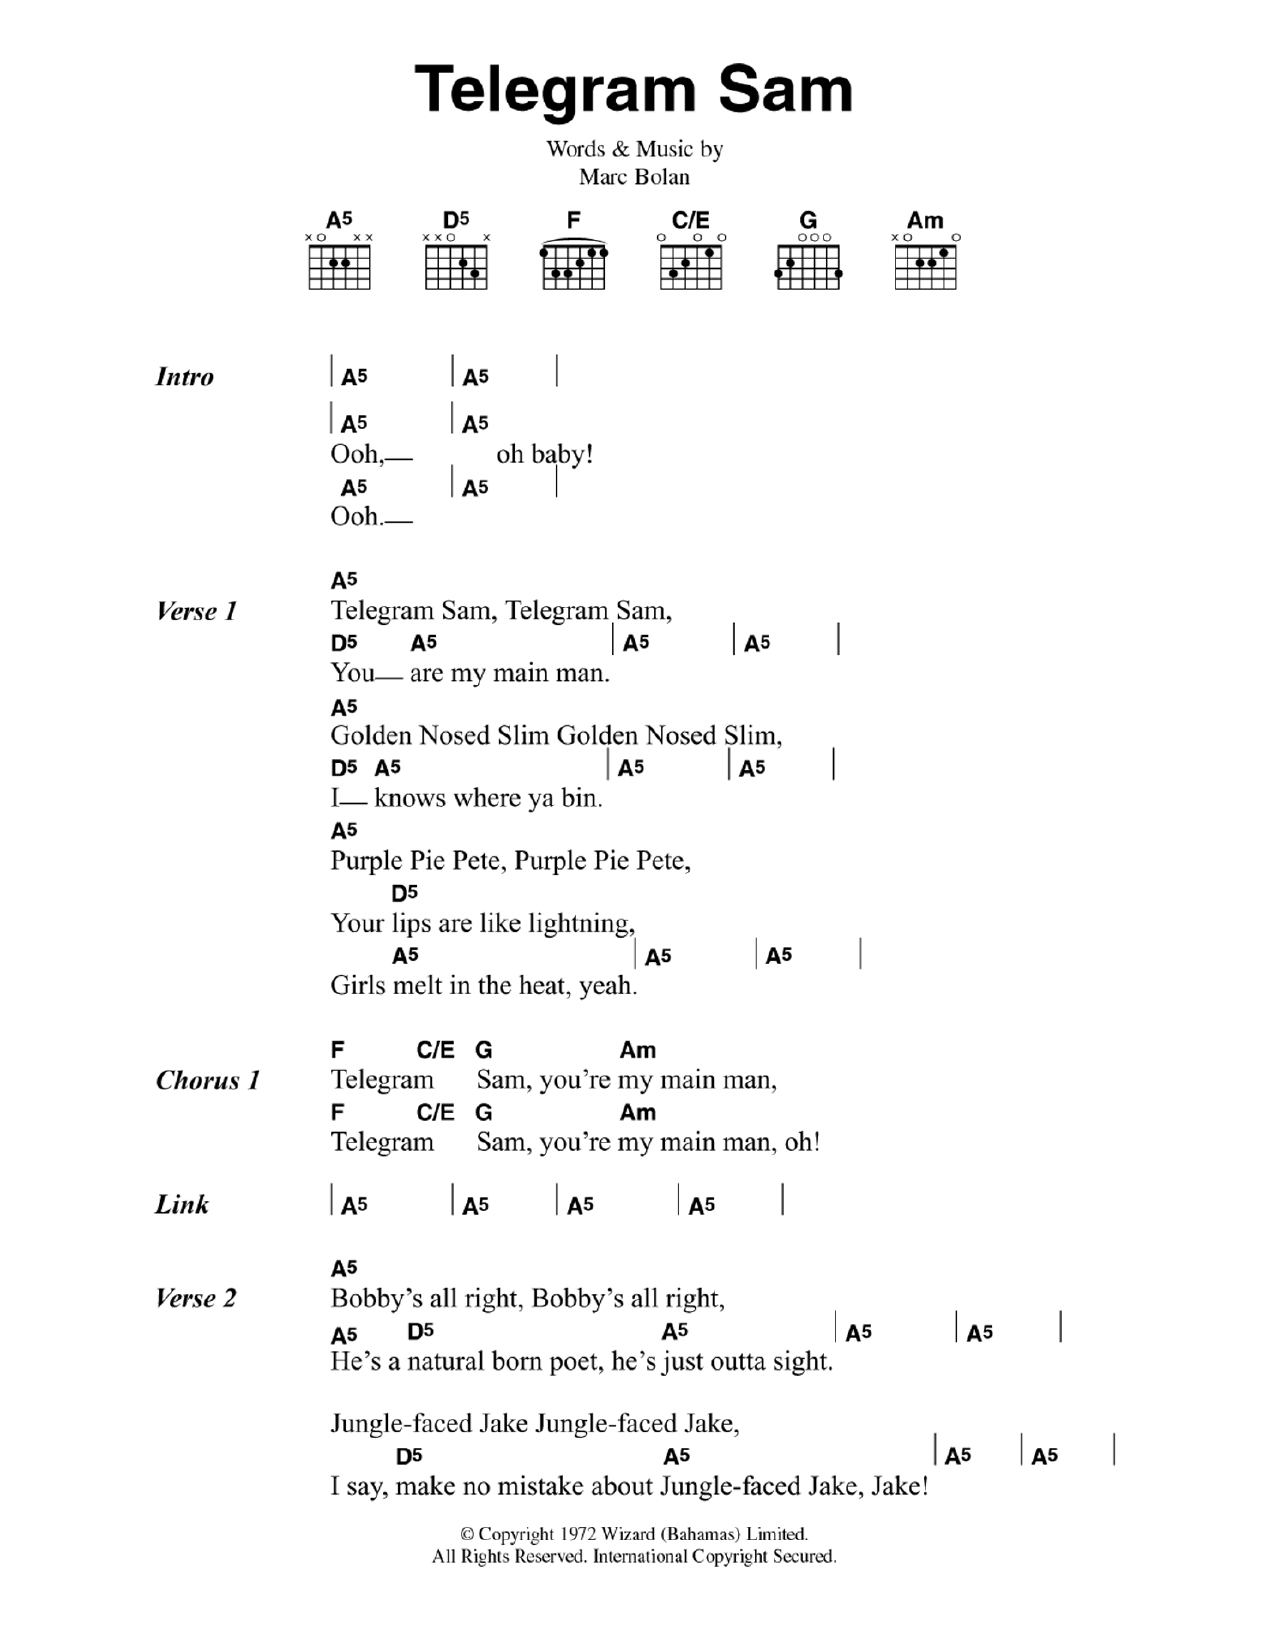 T. Rex Telegram Sam Sheet Music Notes & Chords for Lyrics & Chords - Download or Print PDF